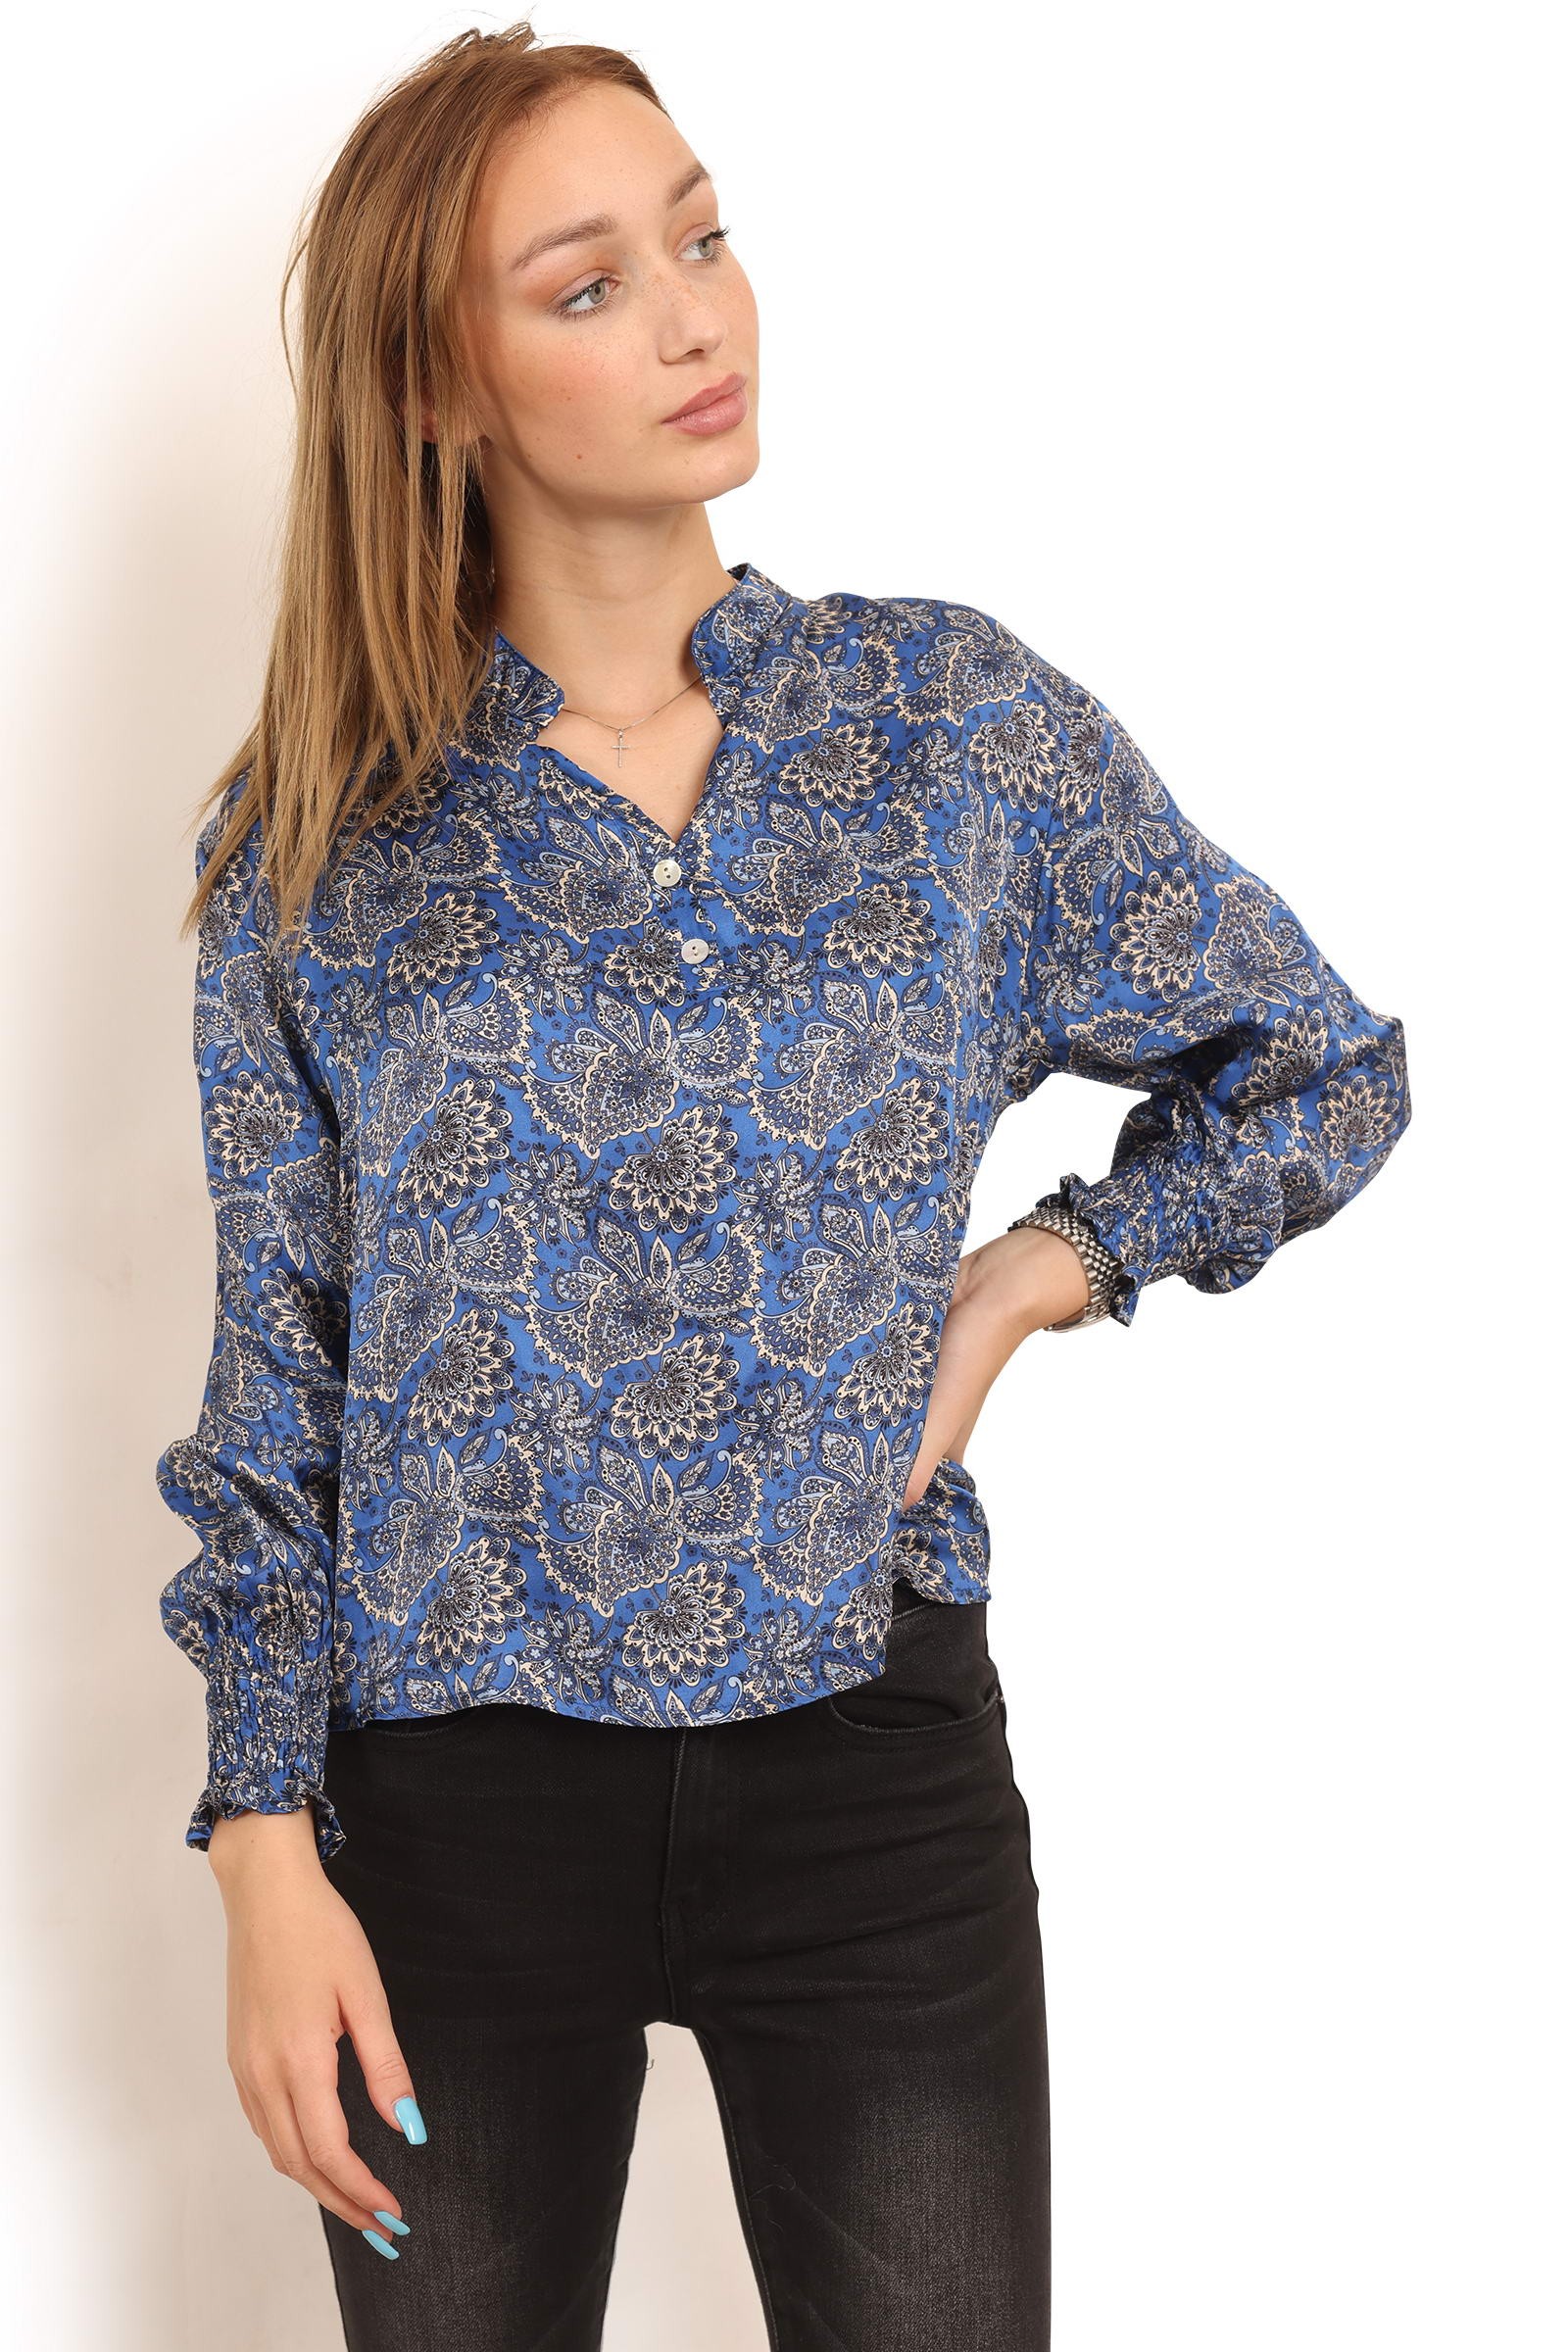 følgeslutning Landbrug Manners Kobolt blå paisley skjorte style 1402 - Copenhagen Luxe